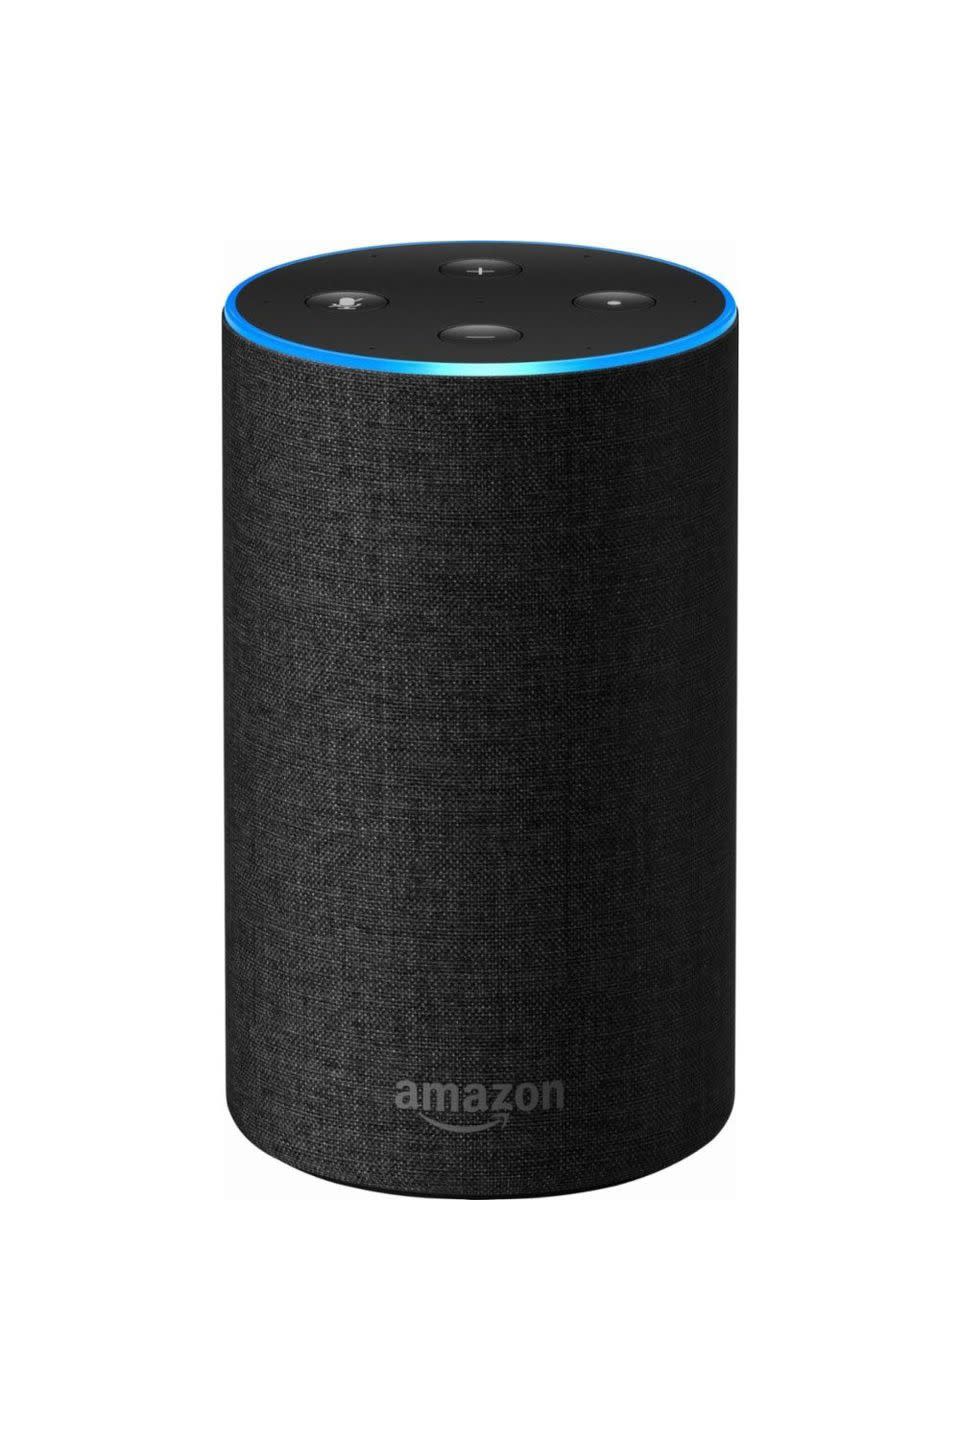 3) Amazon Echo (2nd Generation)